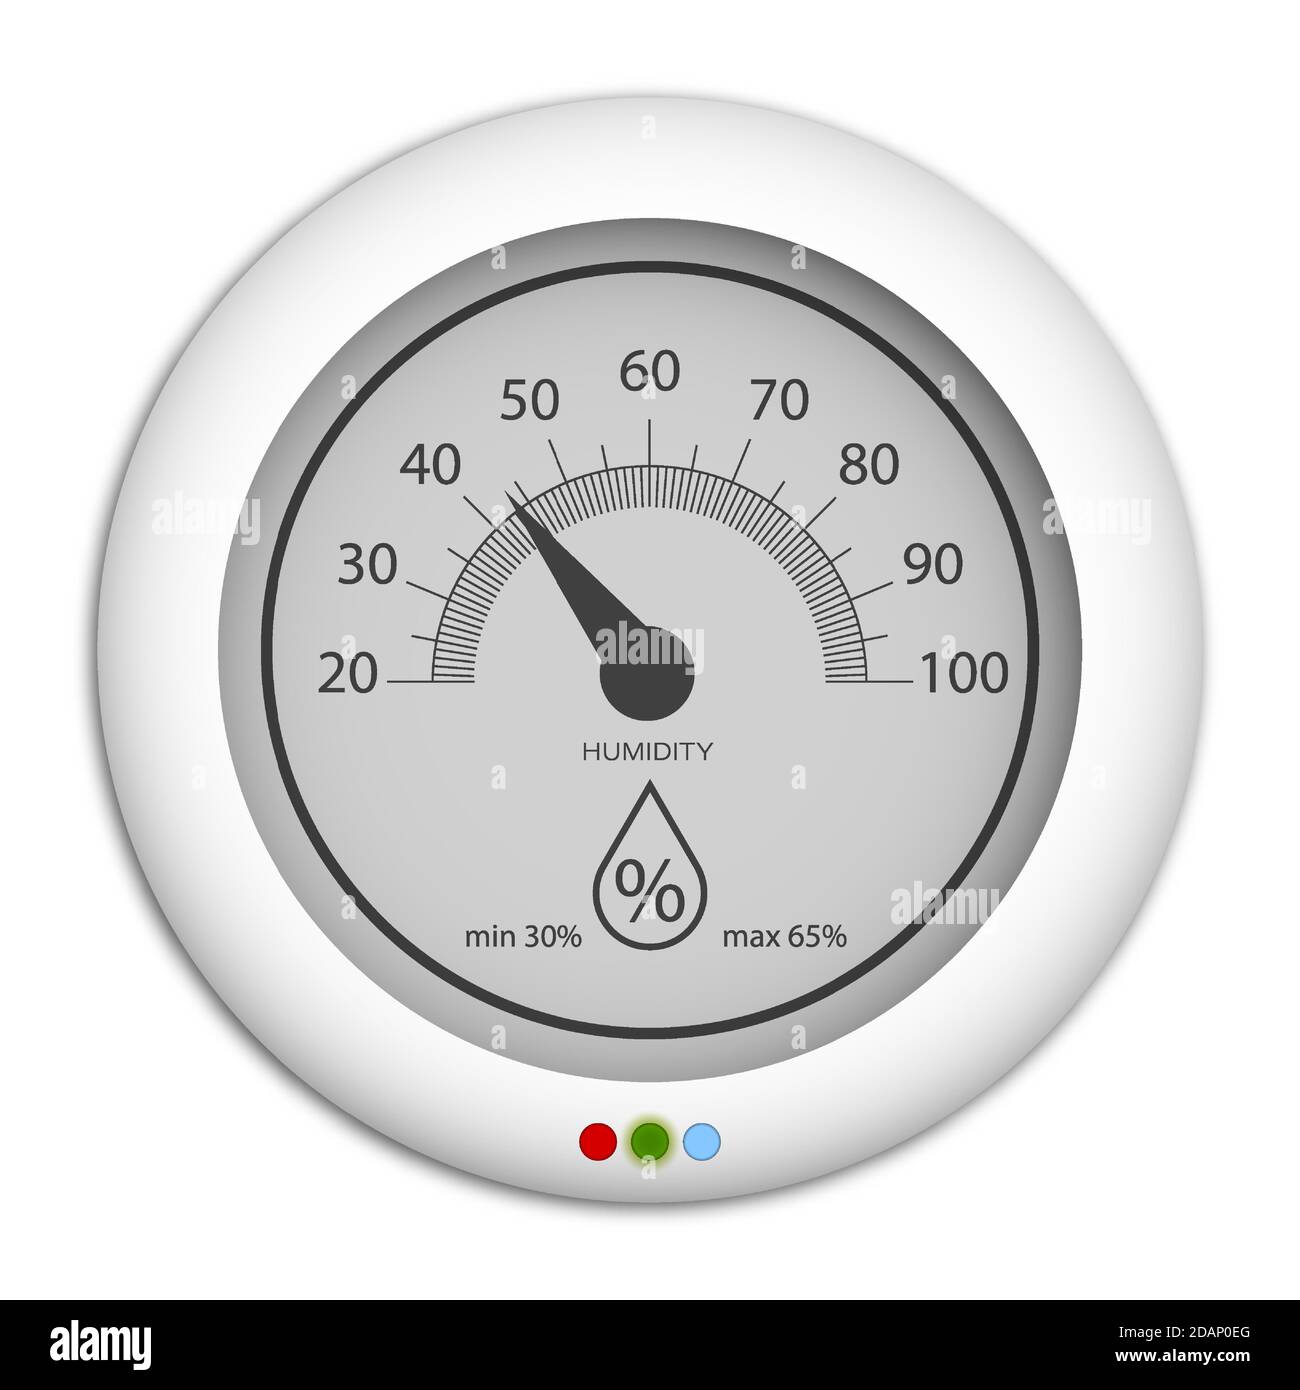 ▶️¿Cómo medir la humedad en casa? Te presentamos al Higrómetro Blog de la  Fisioterapia Respiratoria